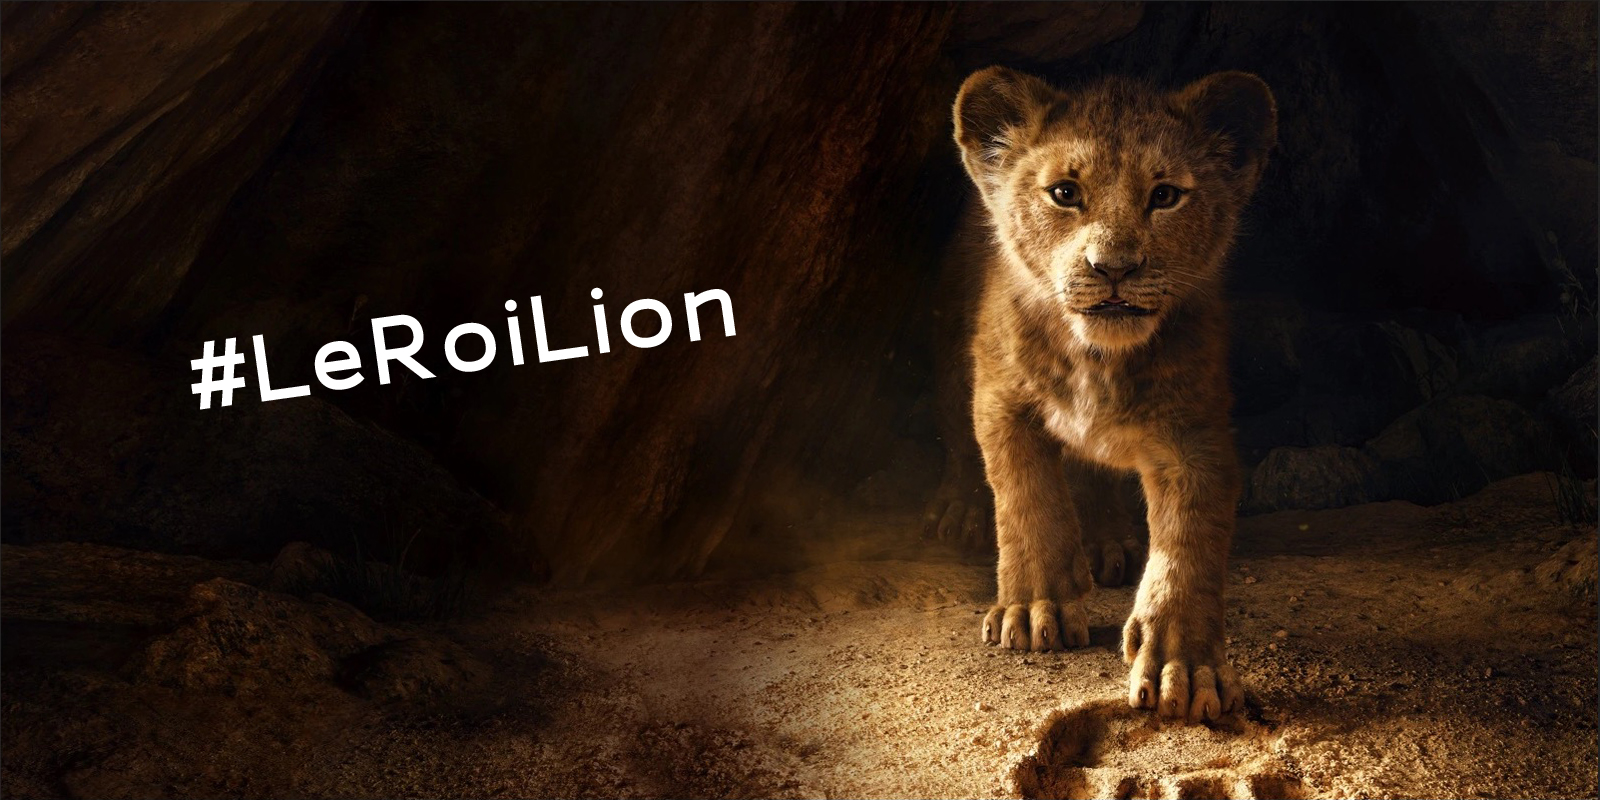 Le Roi Lion 2019 : le live action Disney à l'esthétique parfaite - Le Roi Lion Live Action Disney +